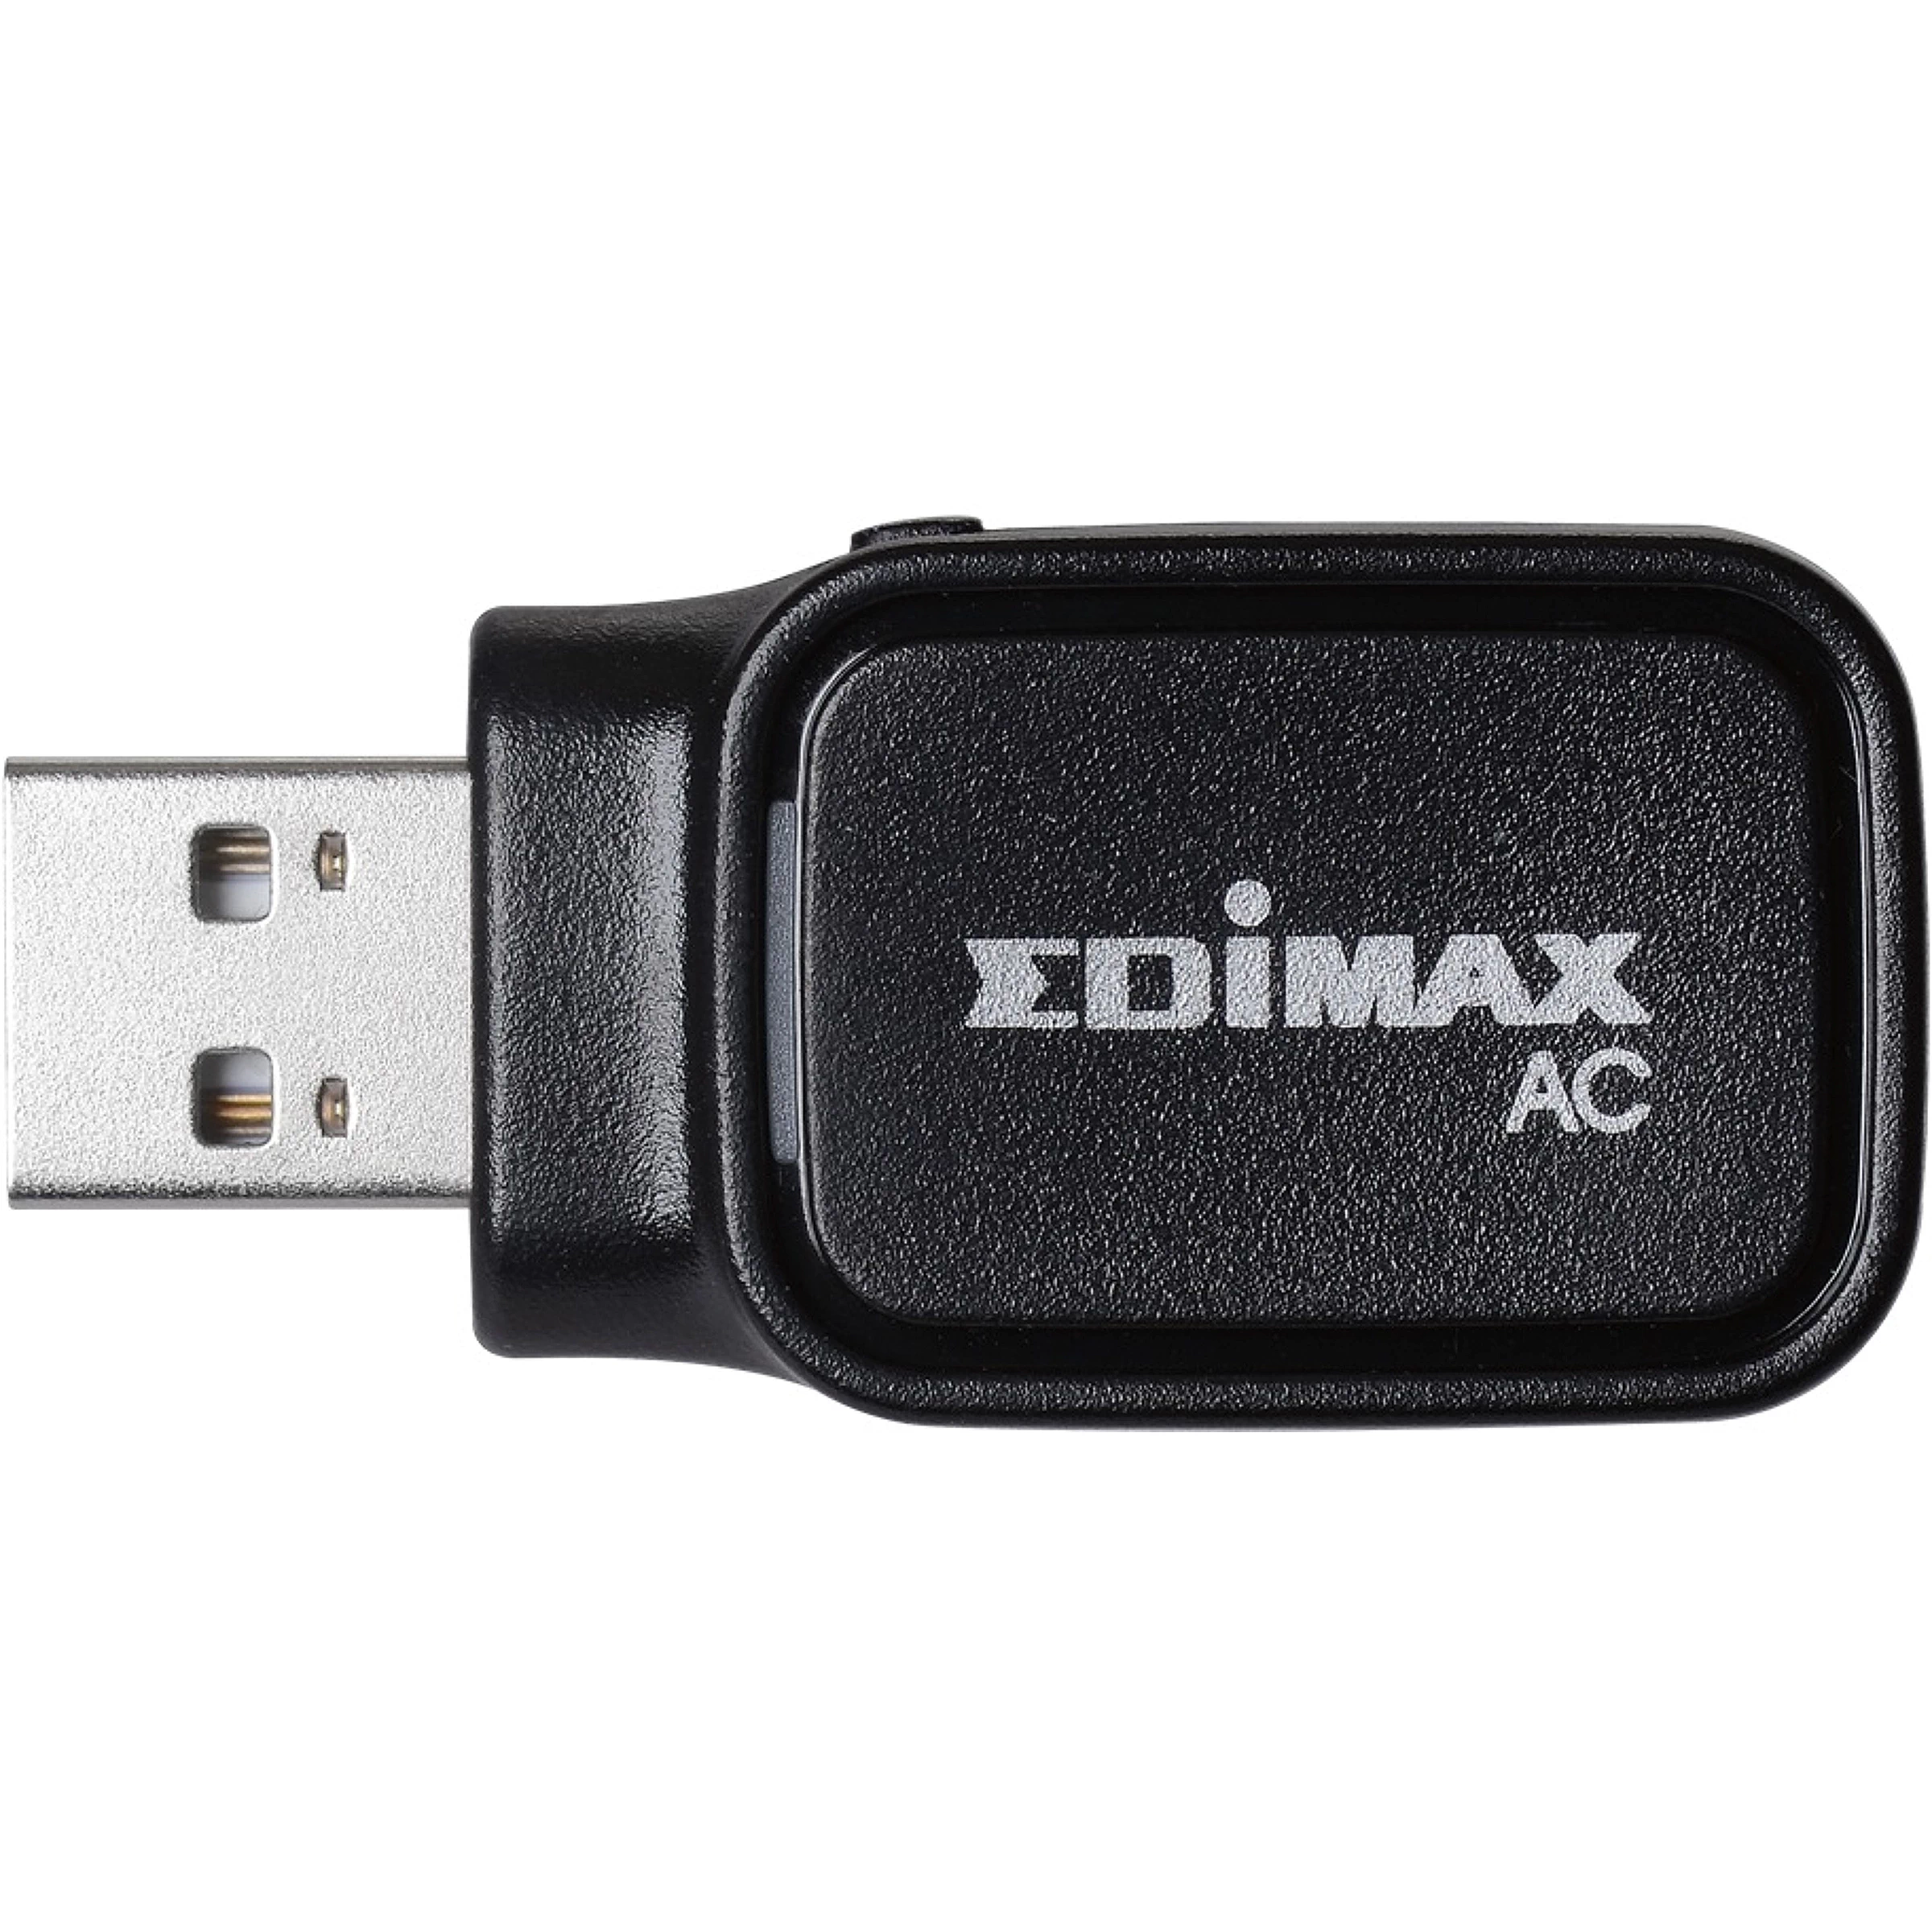 Edimax Ew-7611Ucb Adaptador Usb Wifi Ac600 Bt4.0